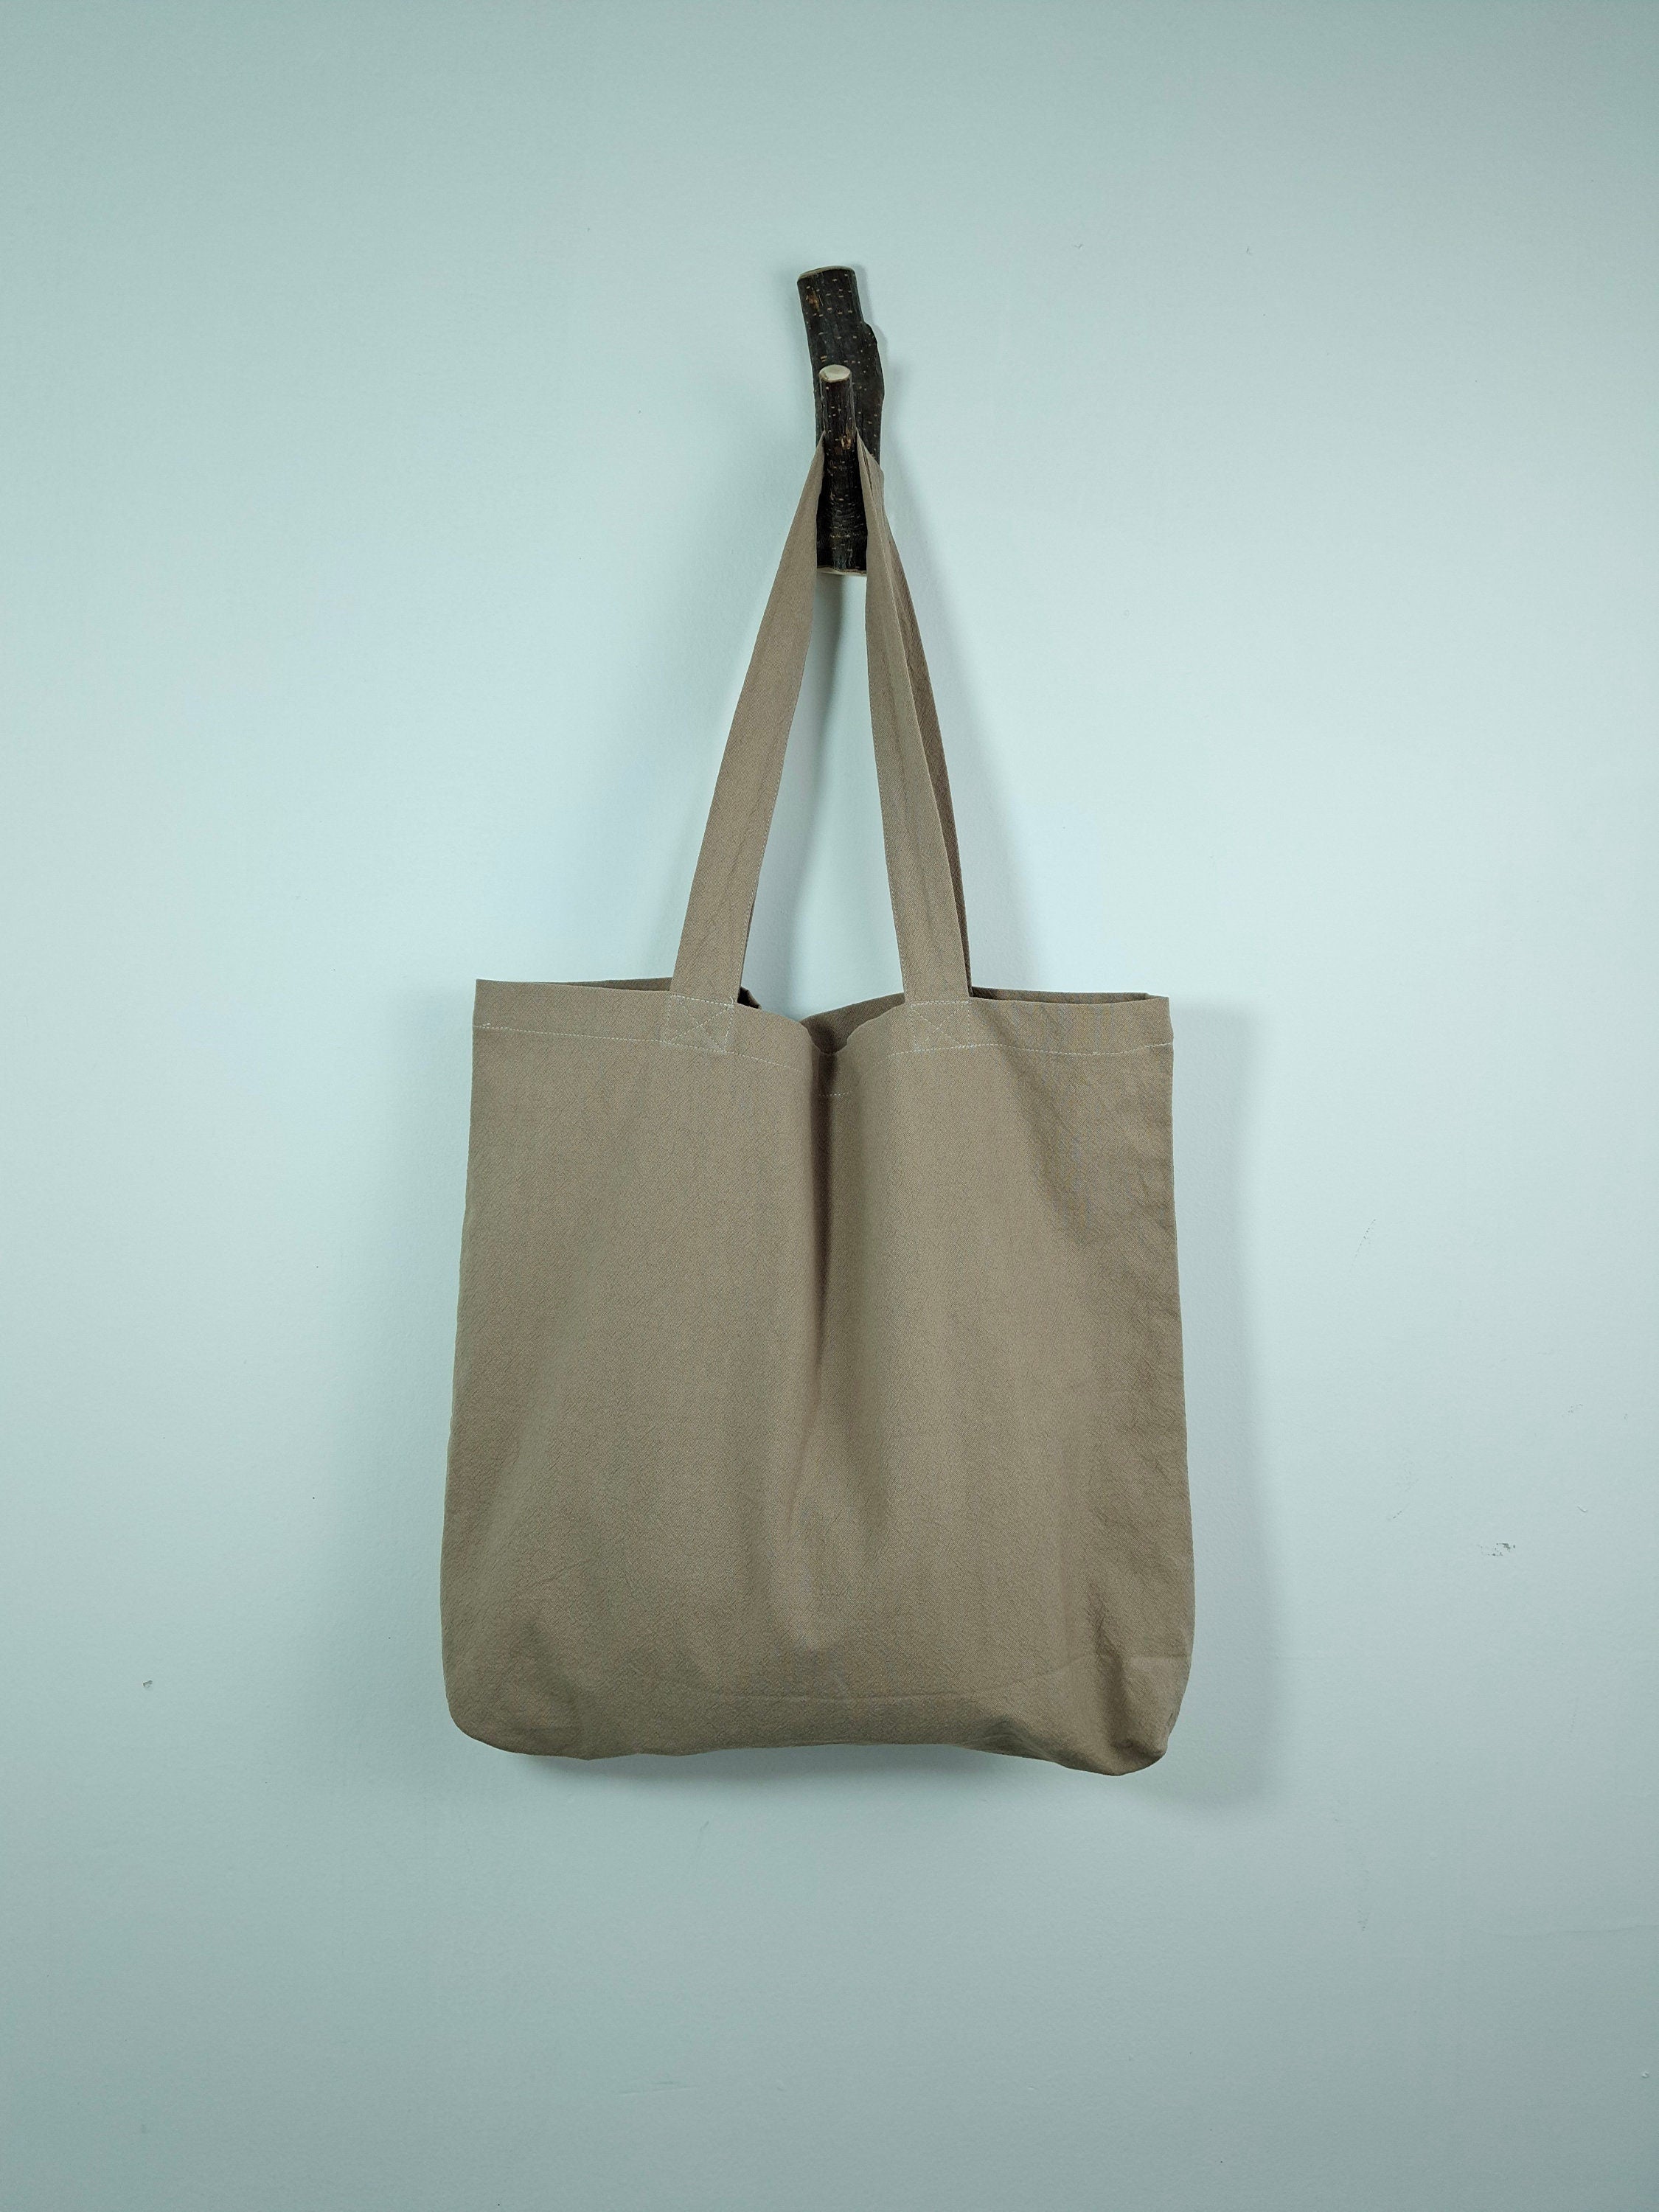 Light brown tote bag, cotton linen tote bag, market bag, linen bag, shopping shoulder bag， travel bag，beach bag，Literary and elegant